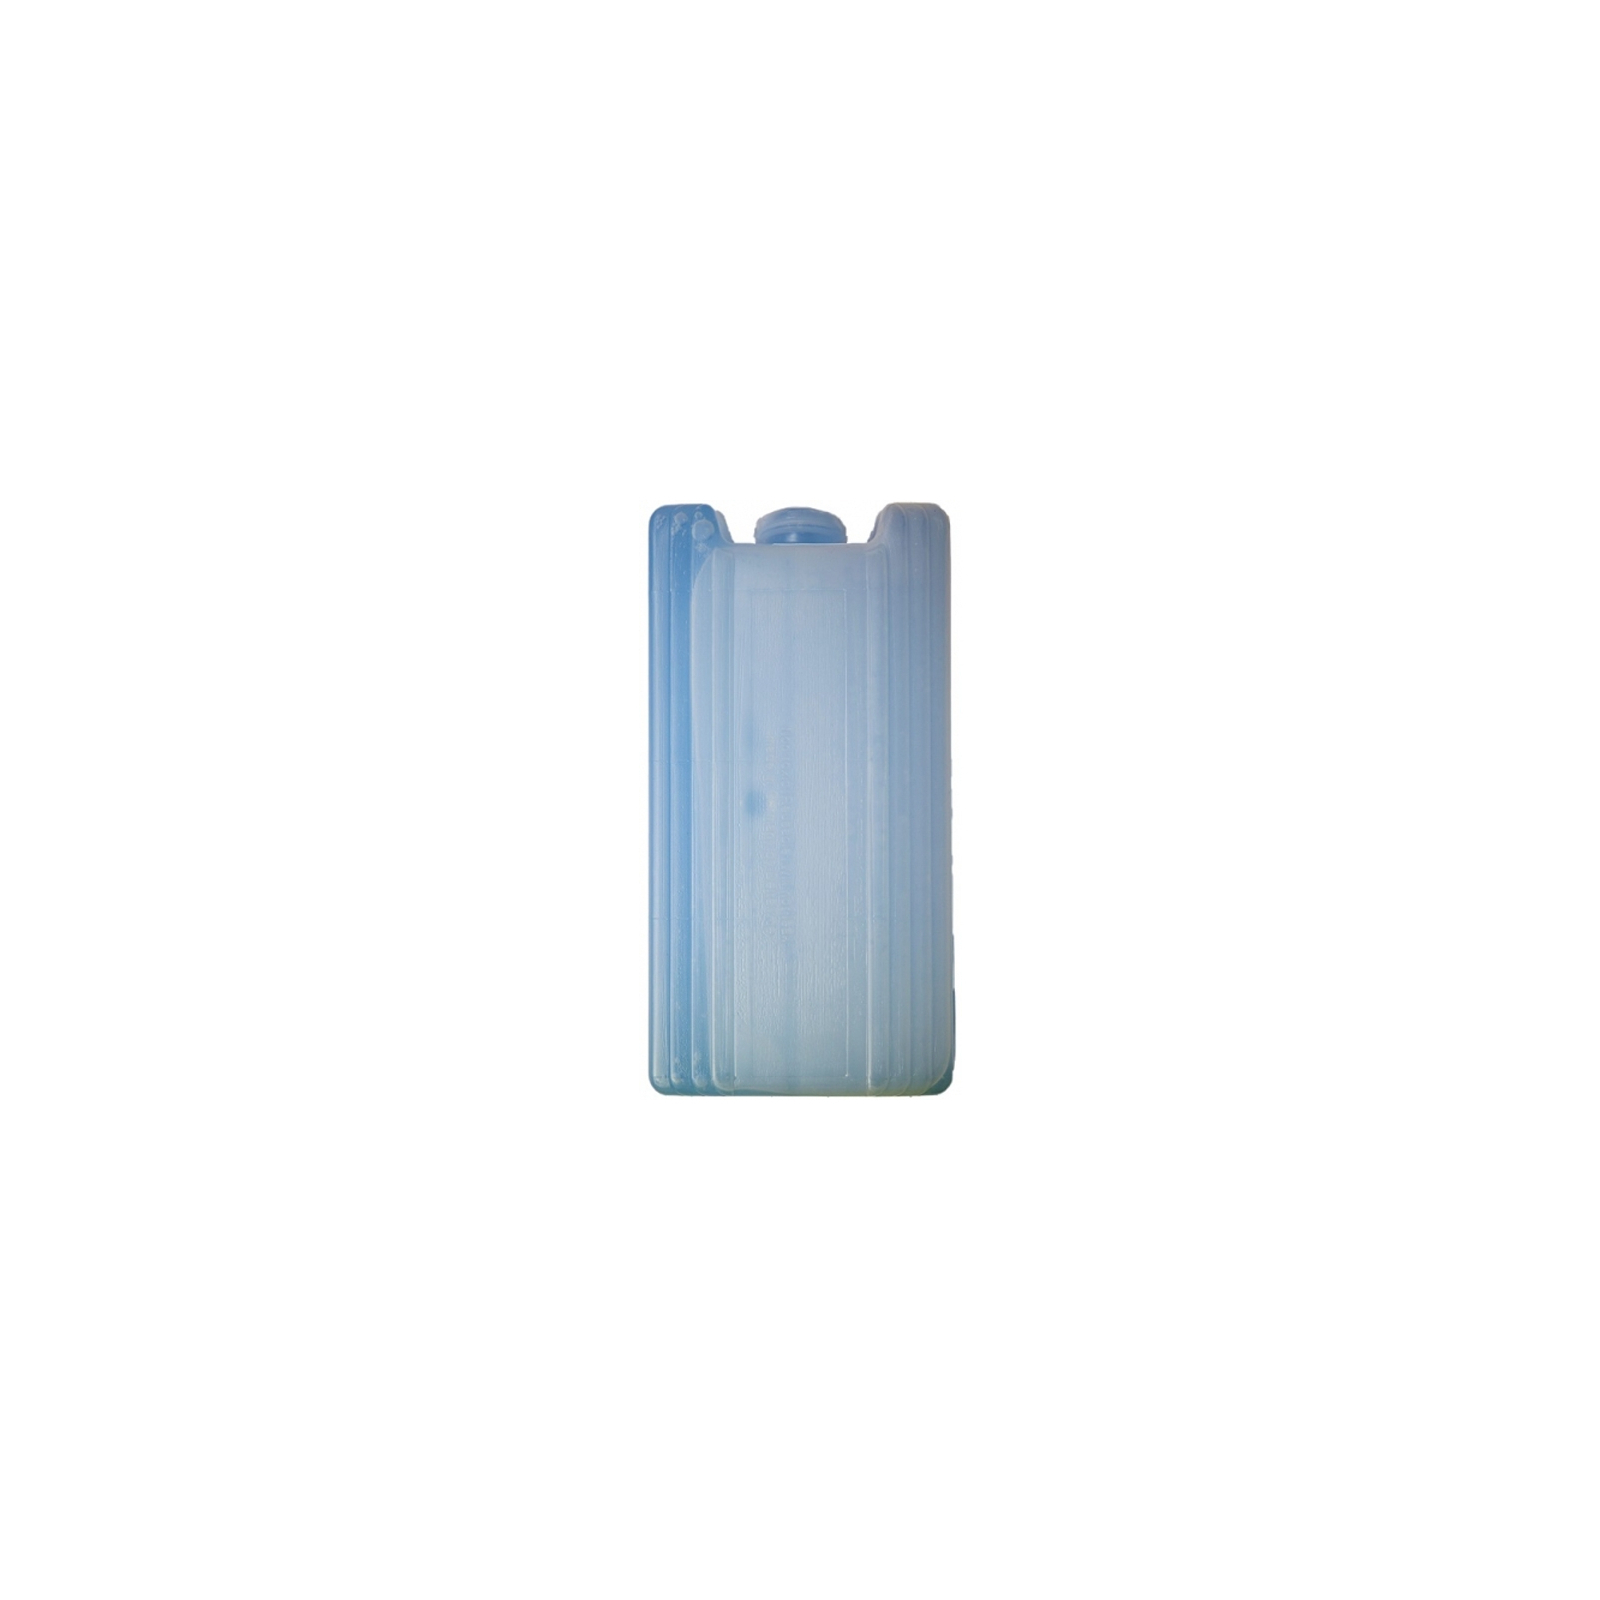 Аккумулятор холода Zorn IceAkku 1x440g blue (4251702500152) изображение 2